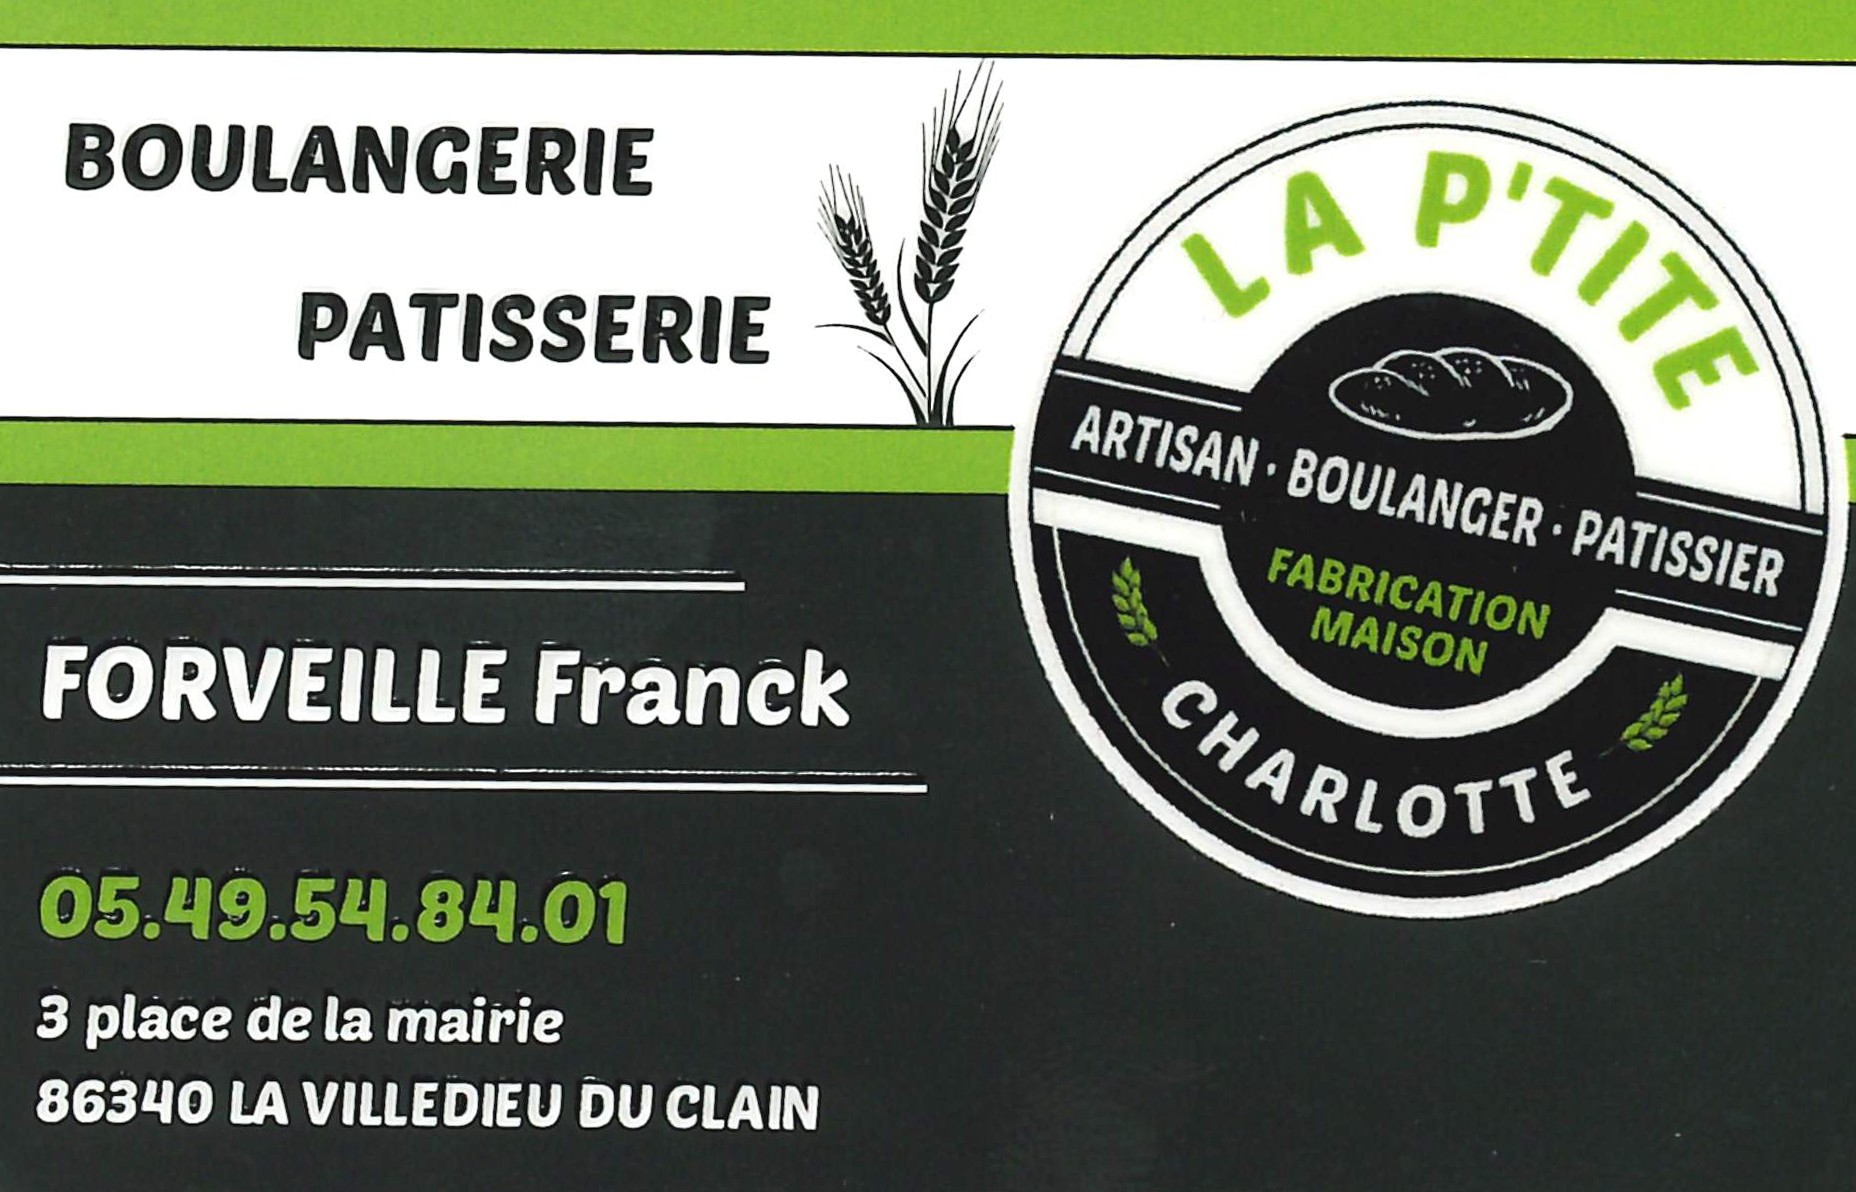 Boulangerie la P’tite Charlotte – La Villedieu du Clain